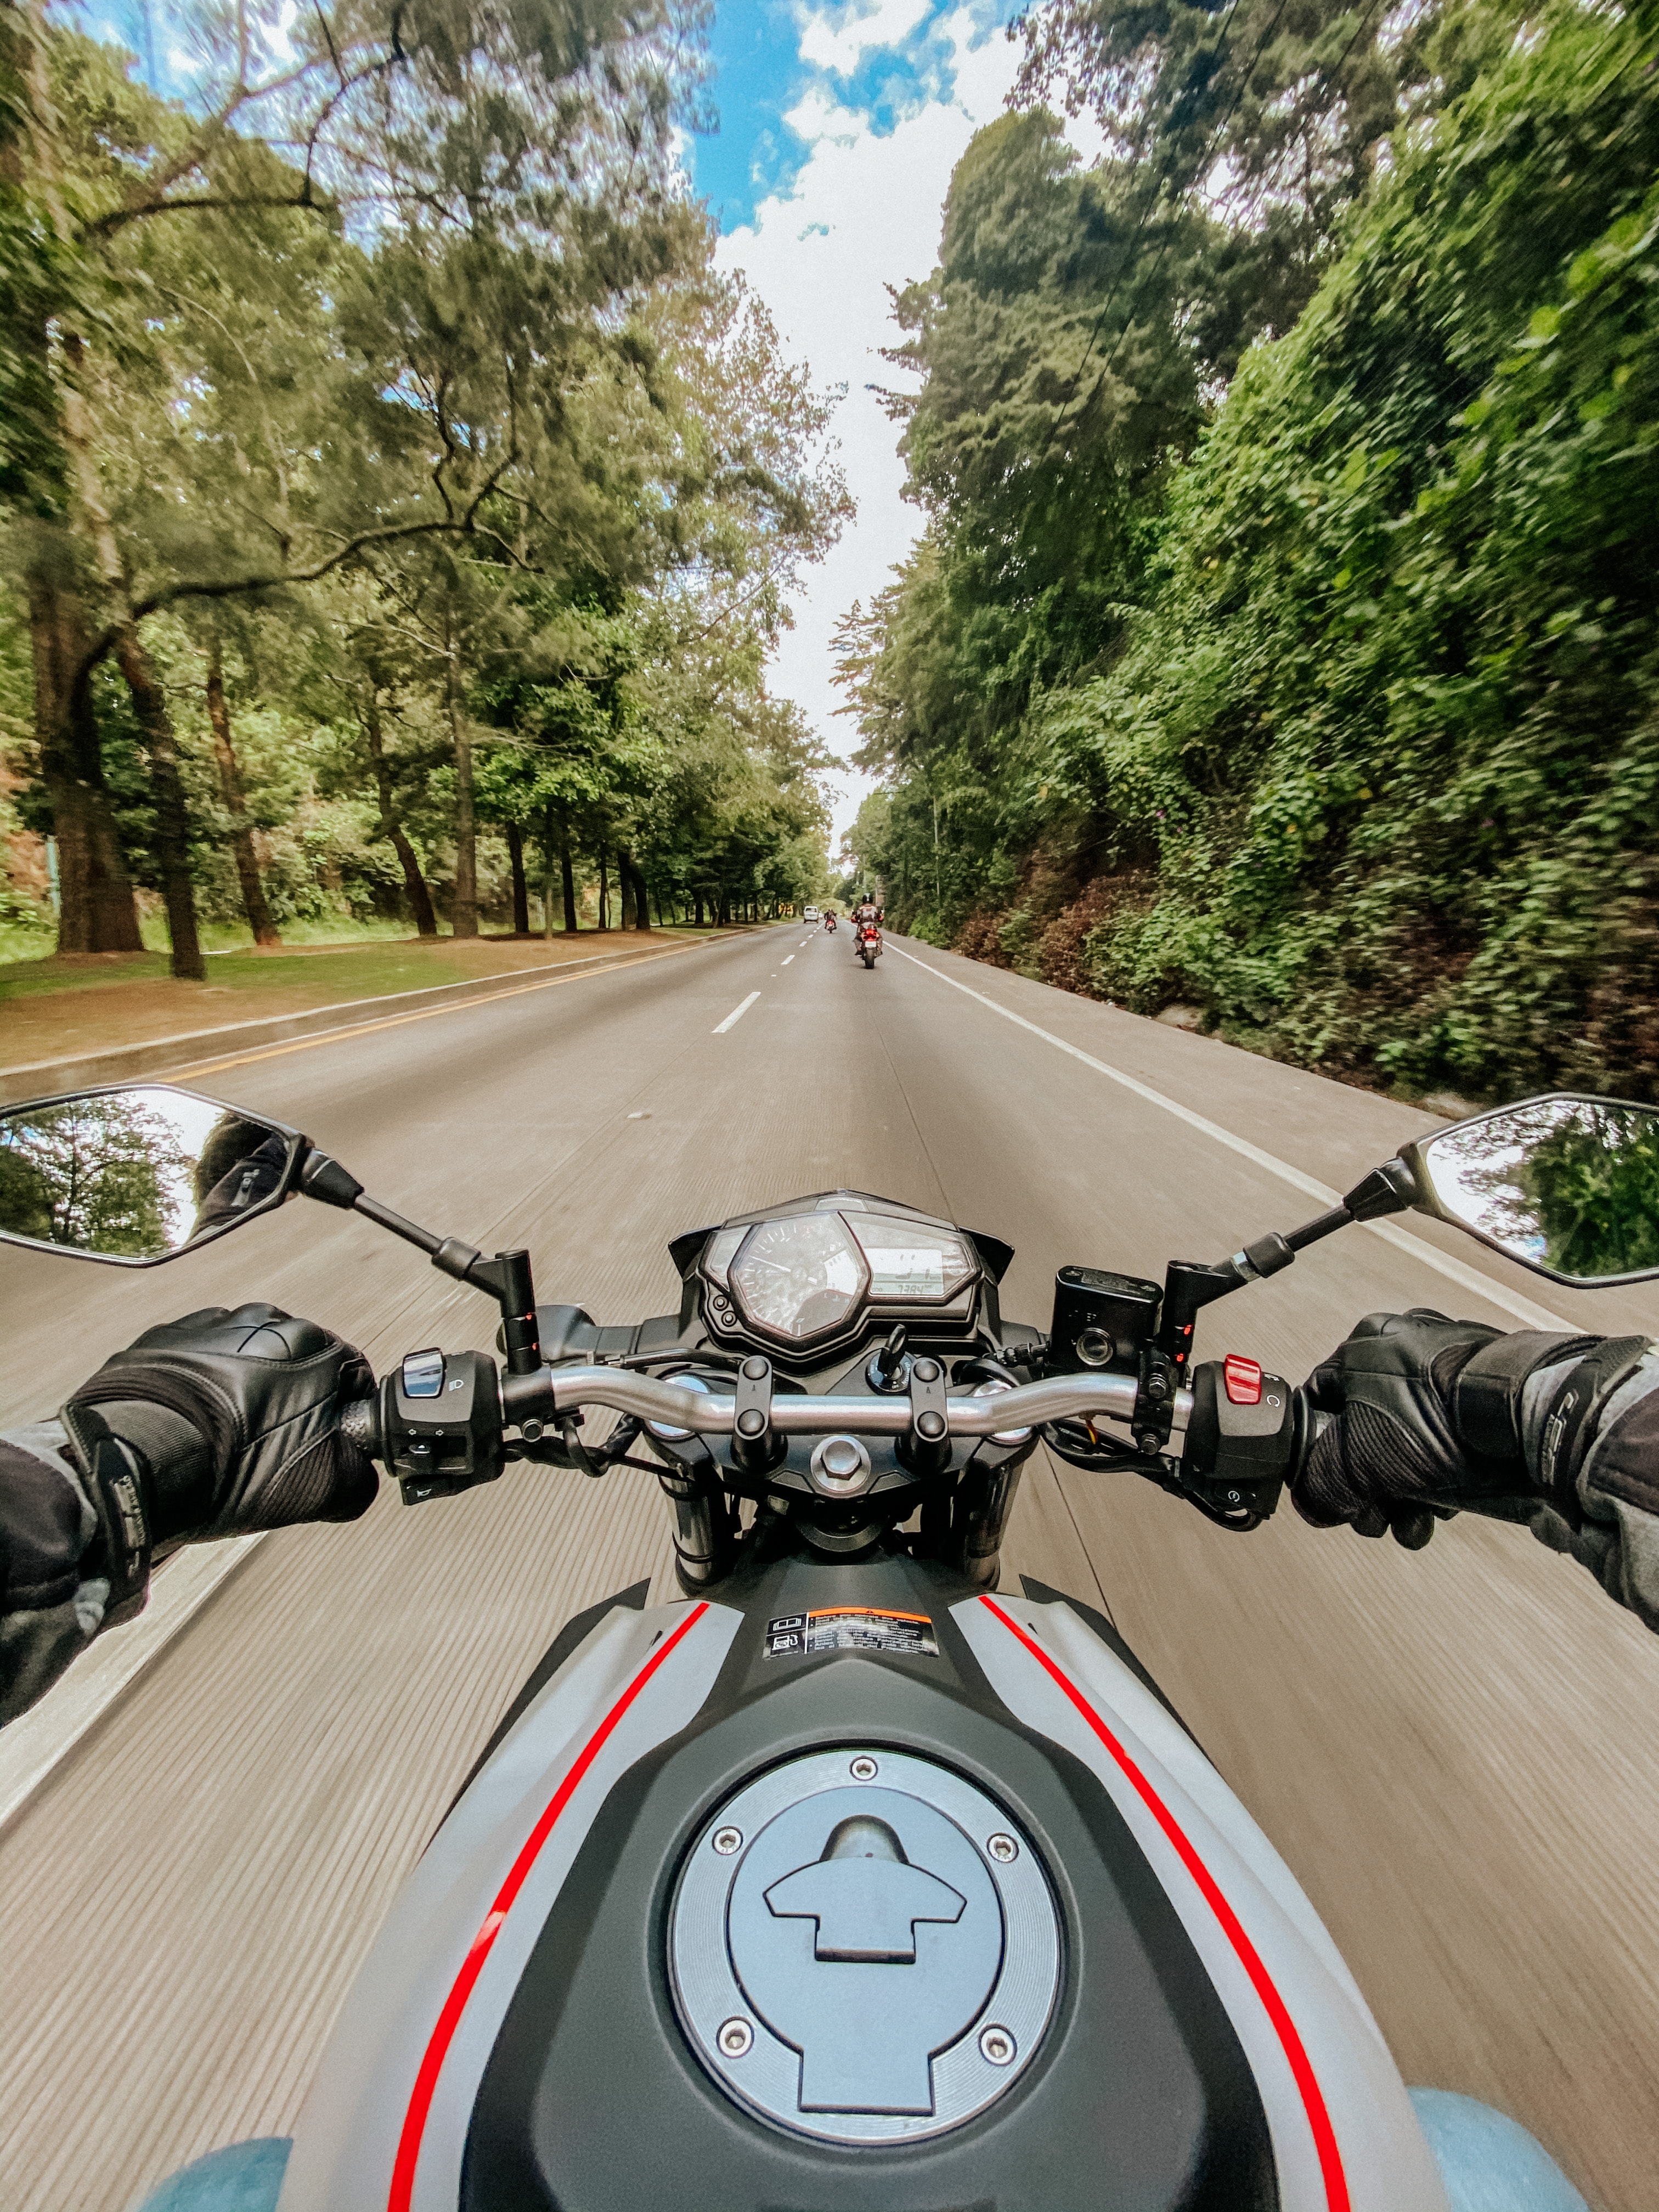 bike, speed, motorcycle, motorcycles, road 2160p